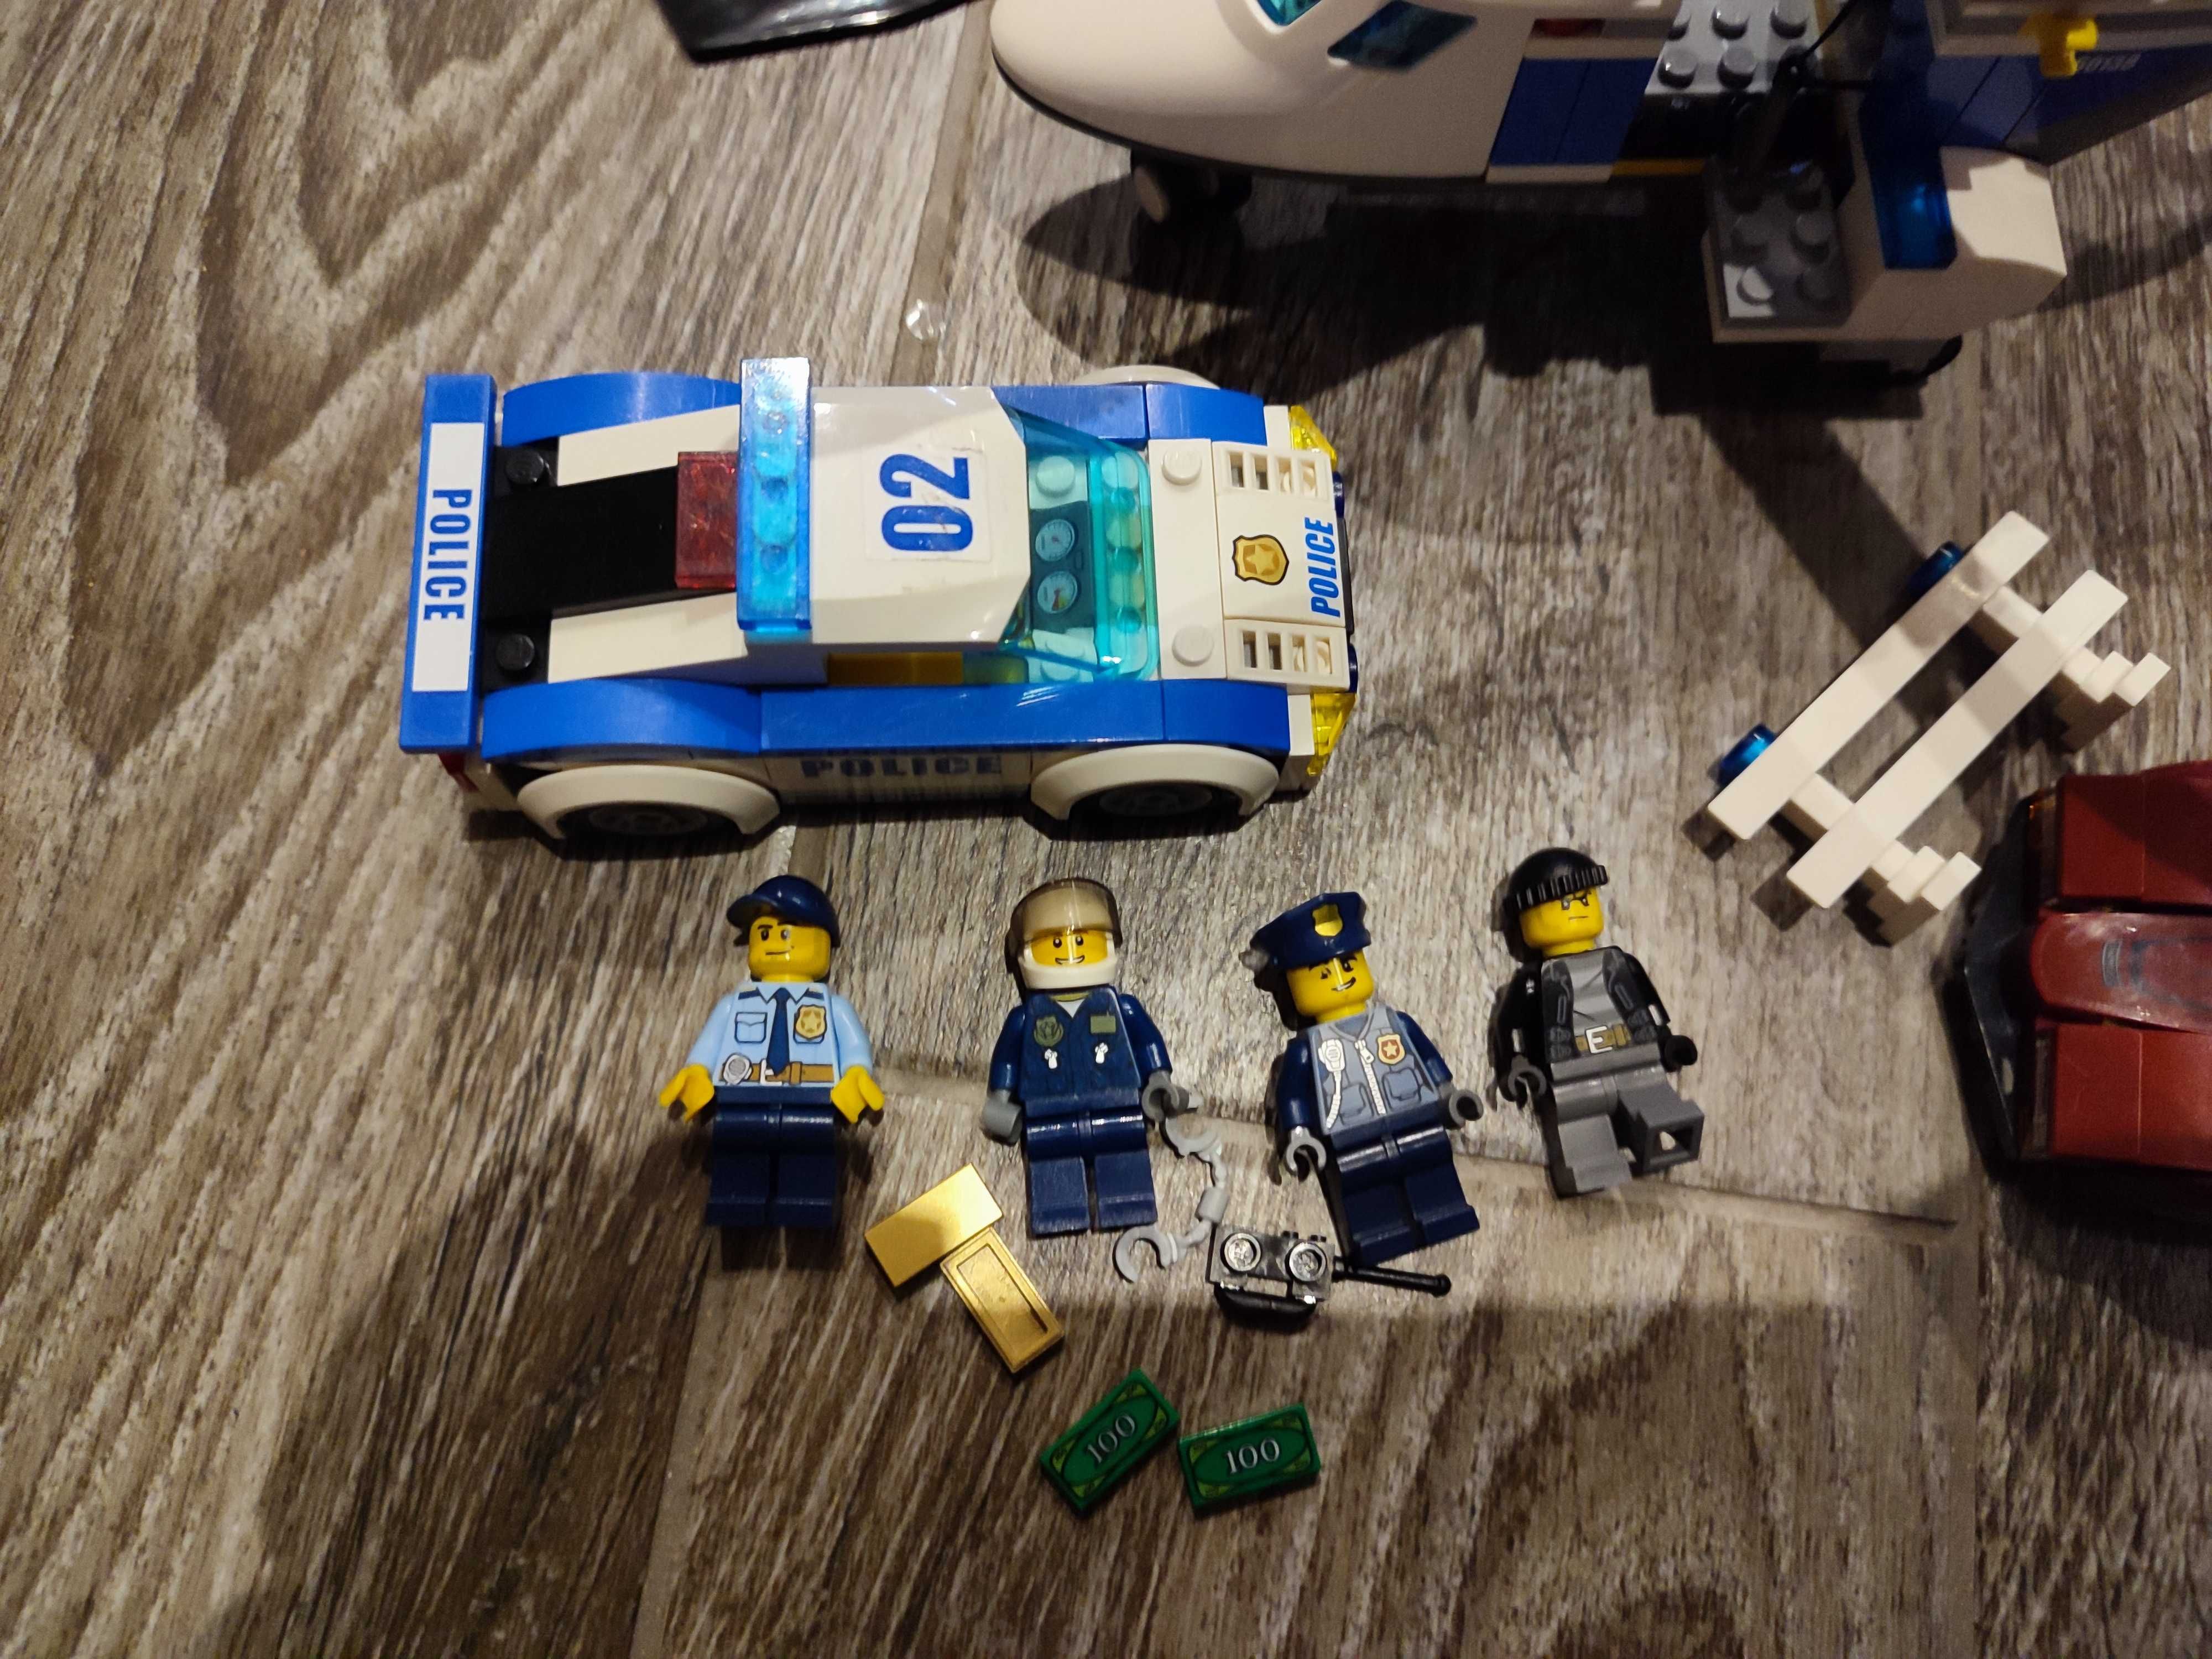 LEGO 60138 City - Szybki pościg